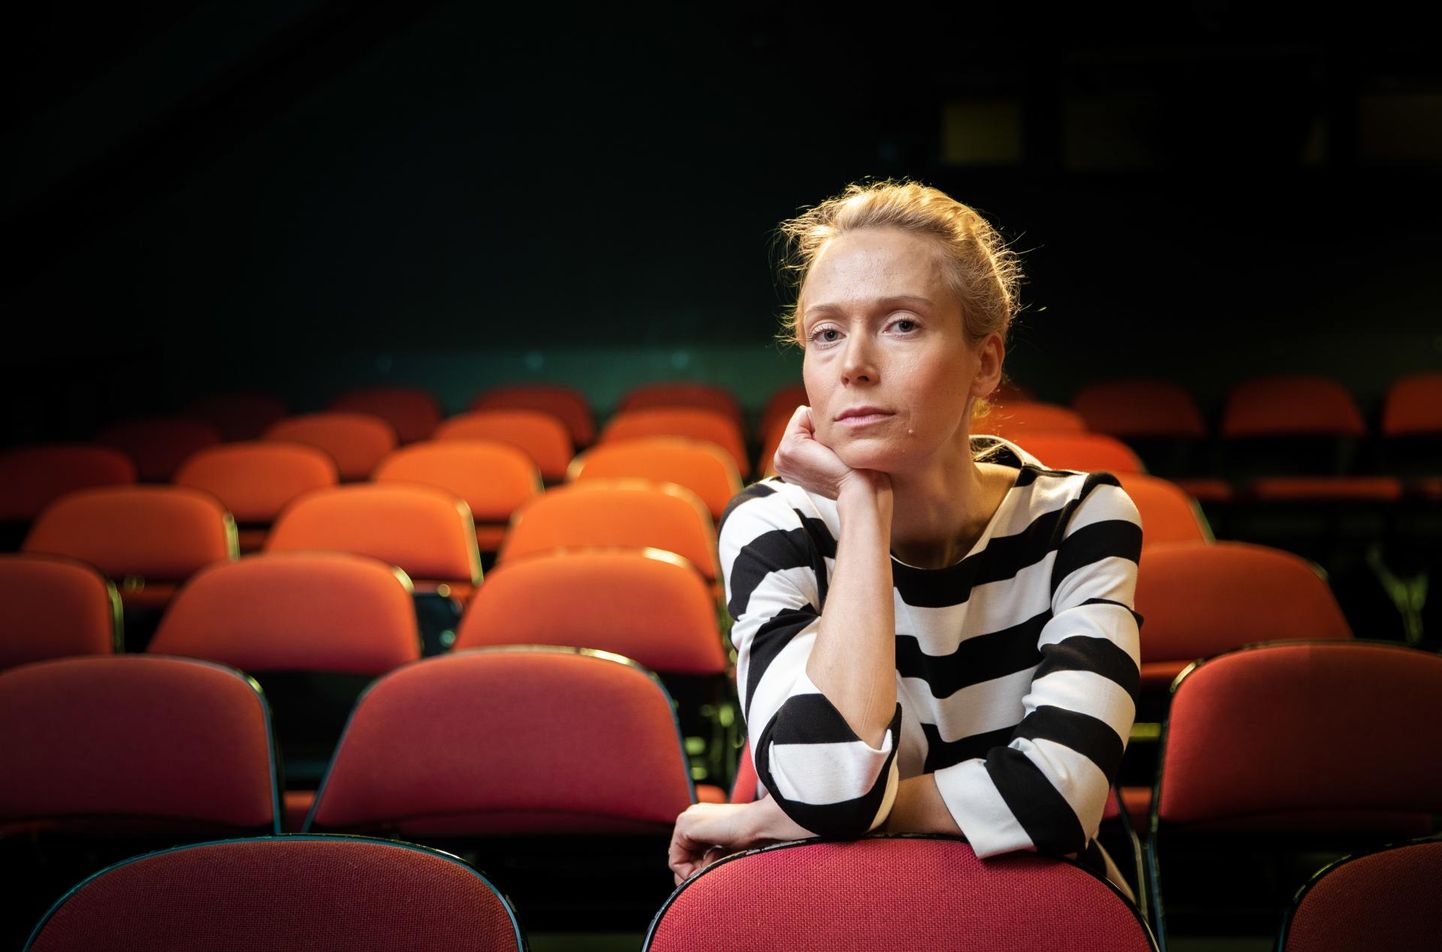 Näitleja ja lavastaja Mari-Liis Lill draamateatris, mõned päevad enne tema lavastatud «Samad sõnad, teine viis» esietendust. FOTO: Madis Veltman